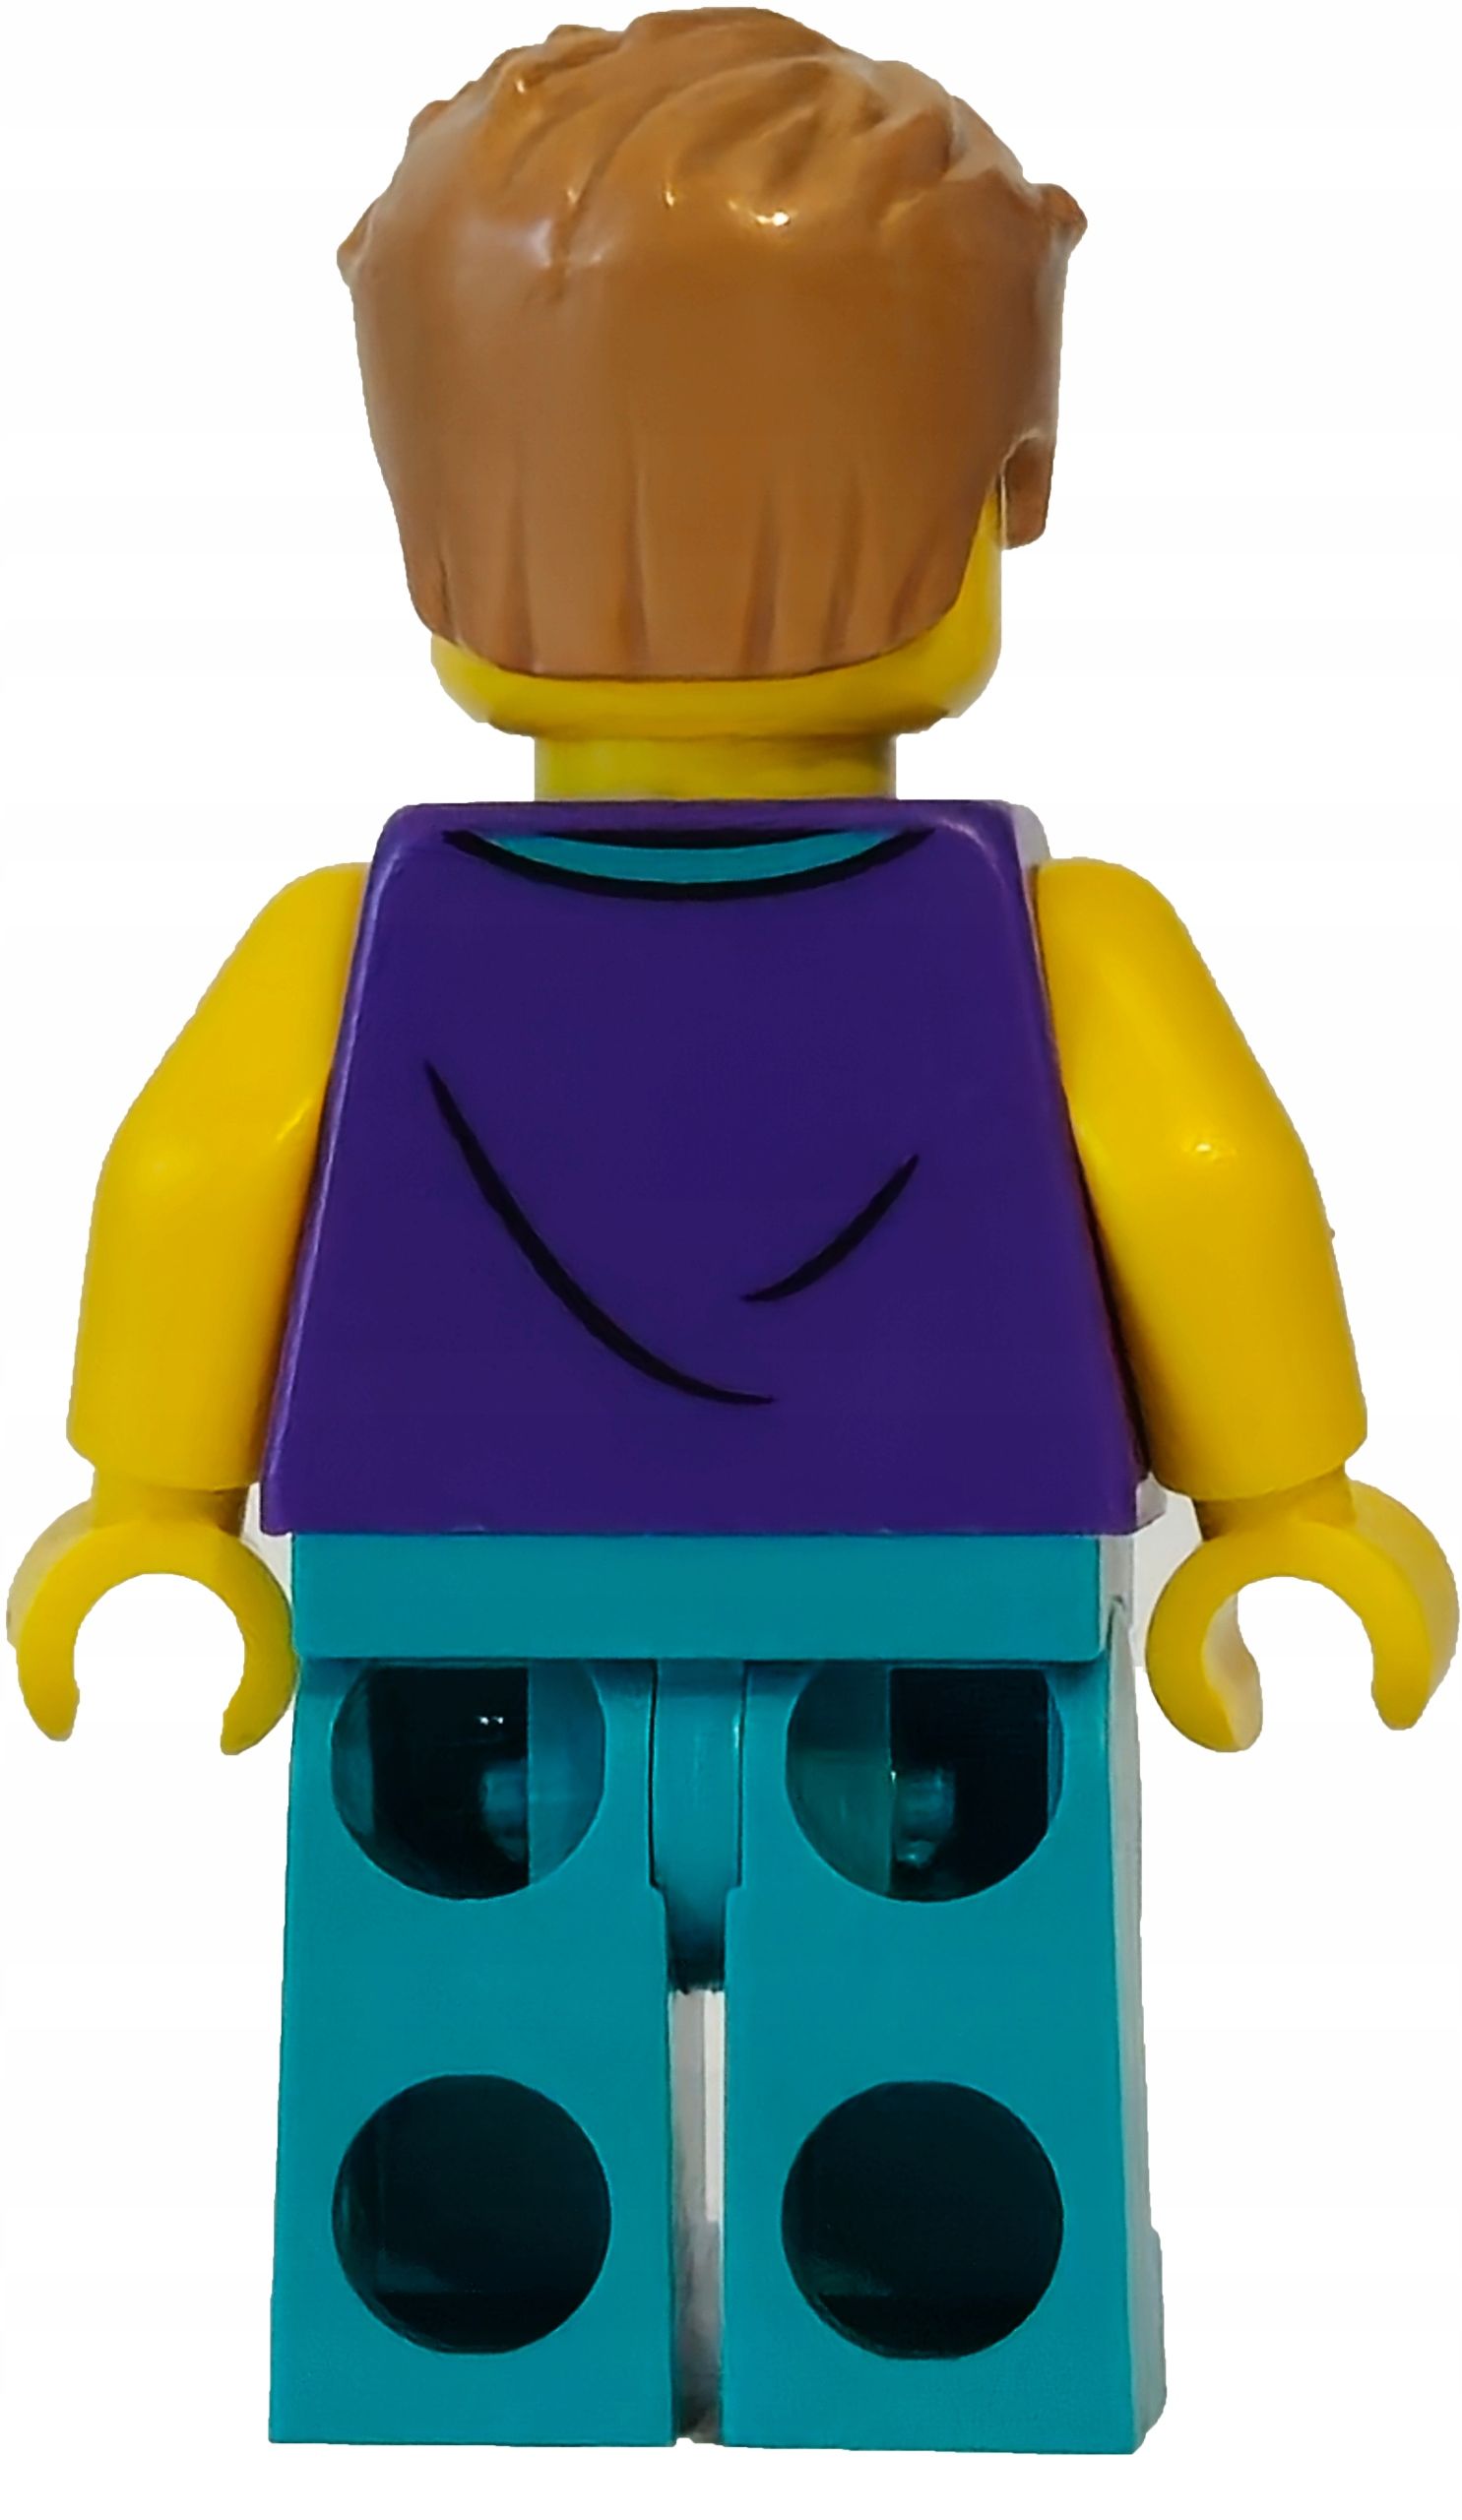 LEGO FIGURKA CITY Pan w okularach Kupujący cty1616